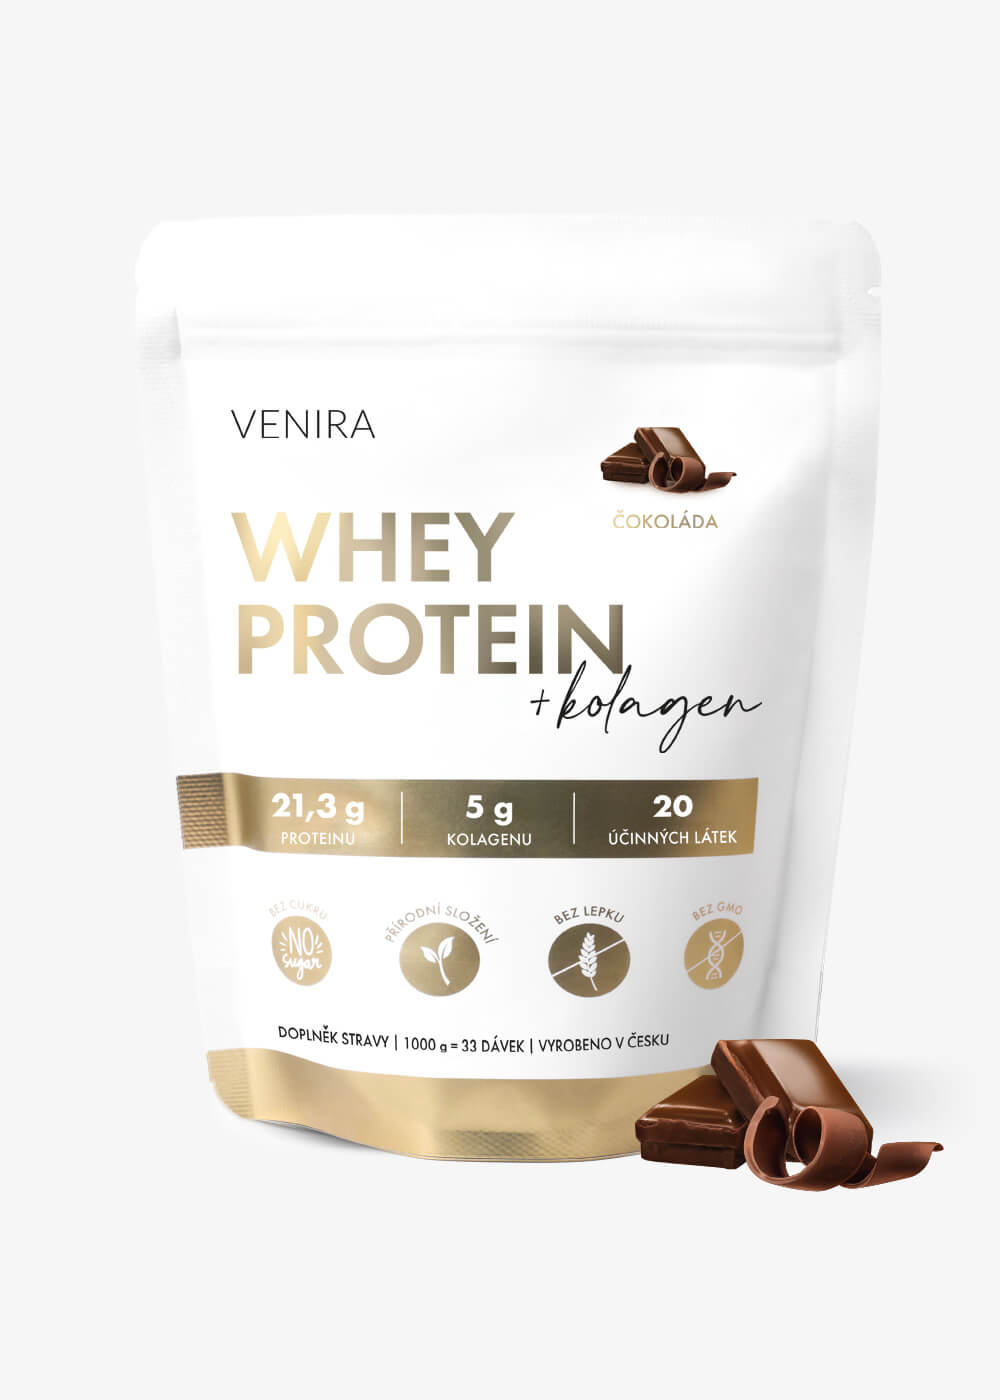 VENIRA whey protein, čokoláda, 1000 g